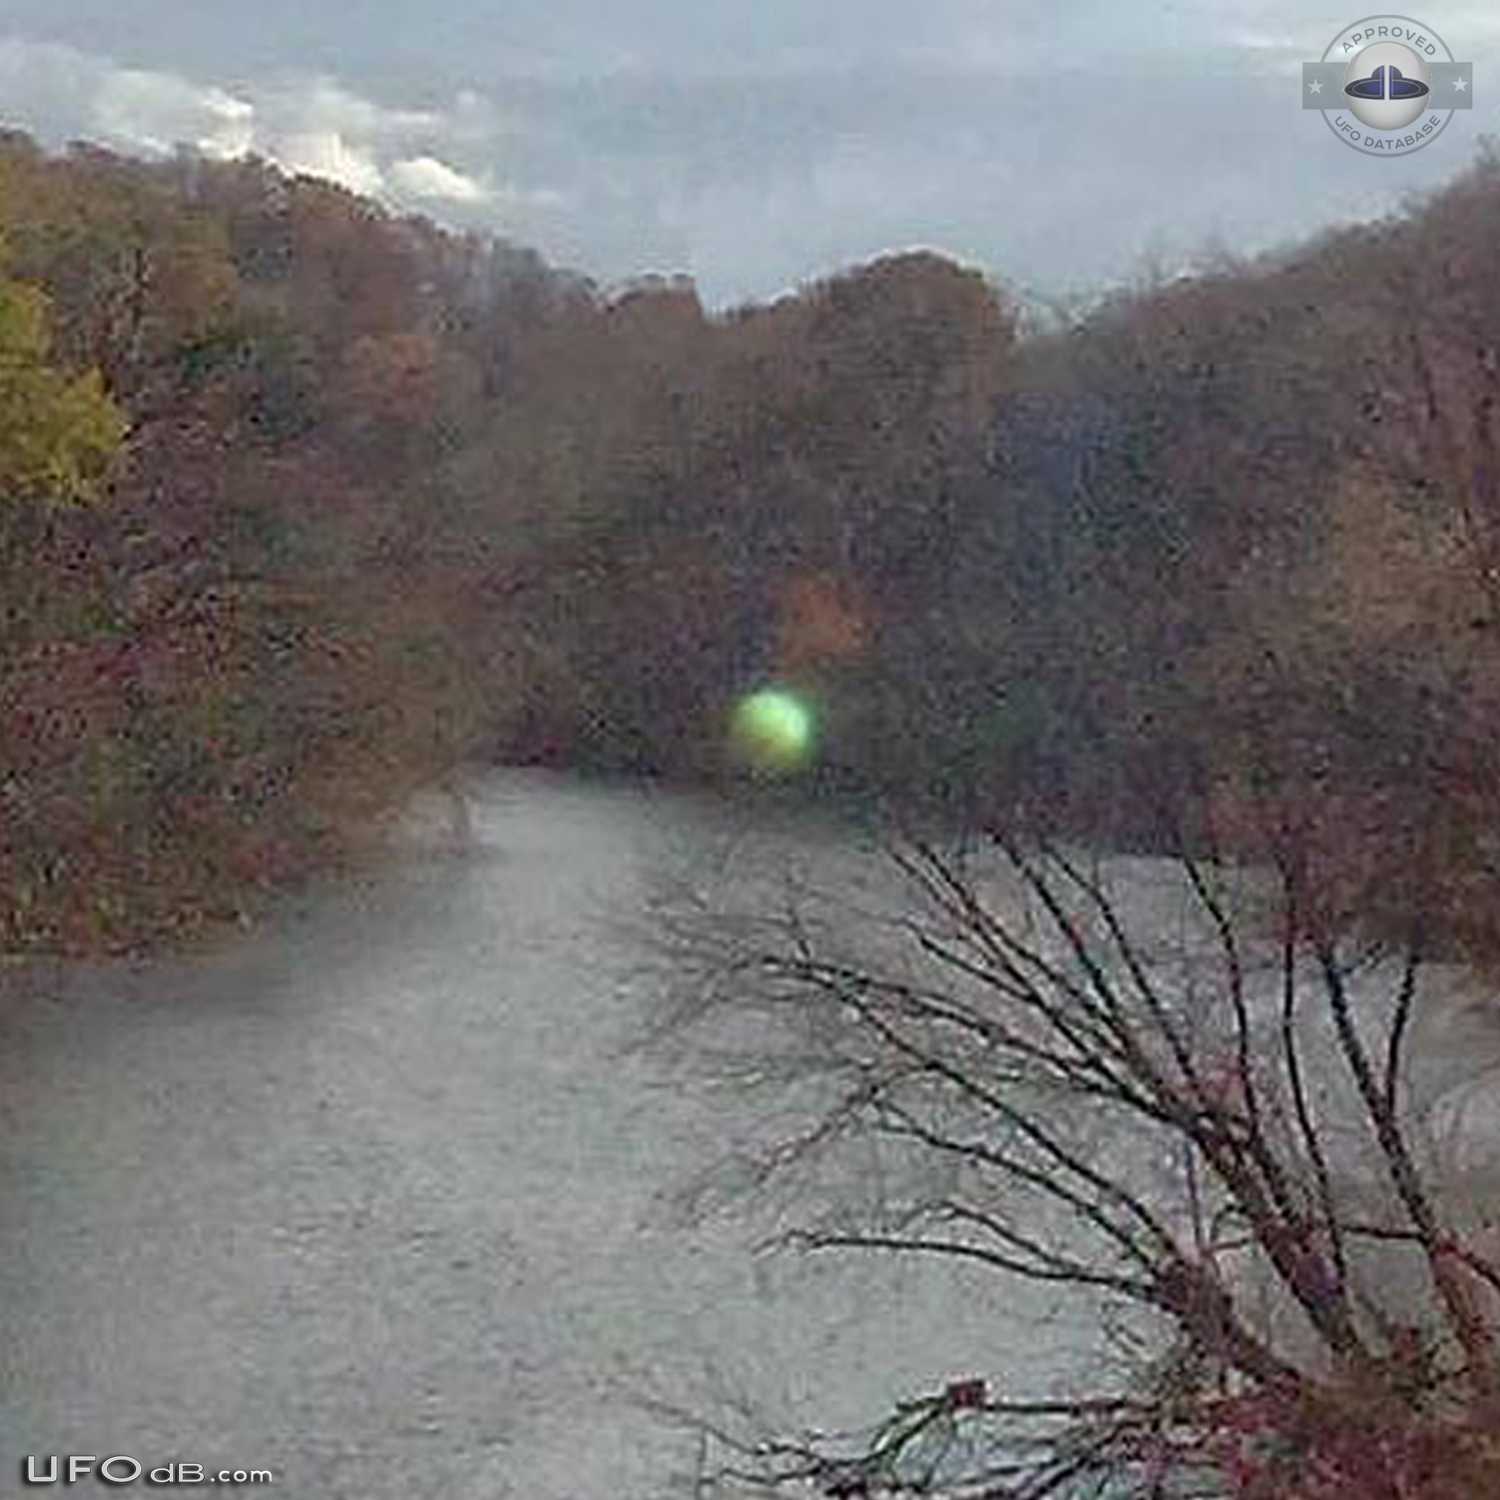 Green Orb UFO seen near greenway in Roanoke, Virginia 2013 UFO Picture #545-2